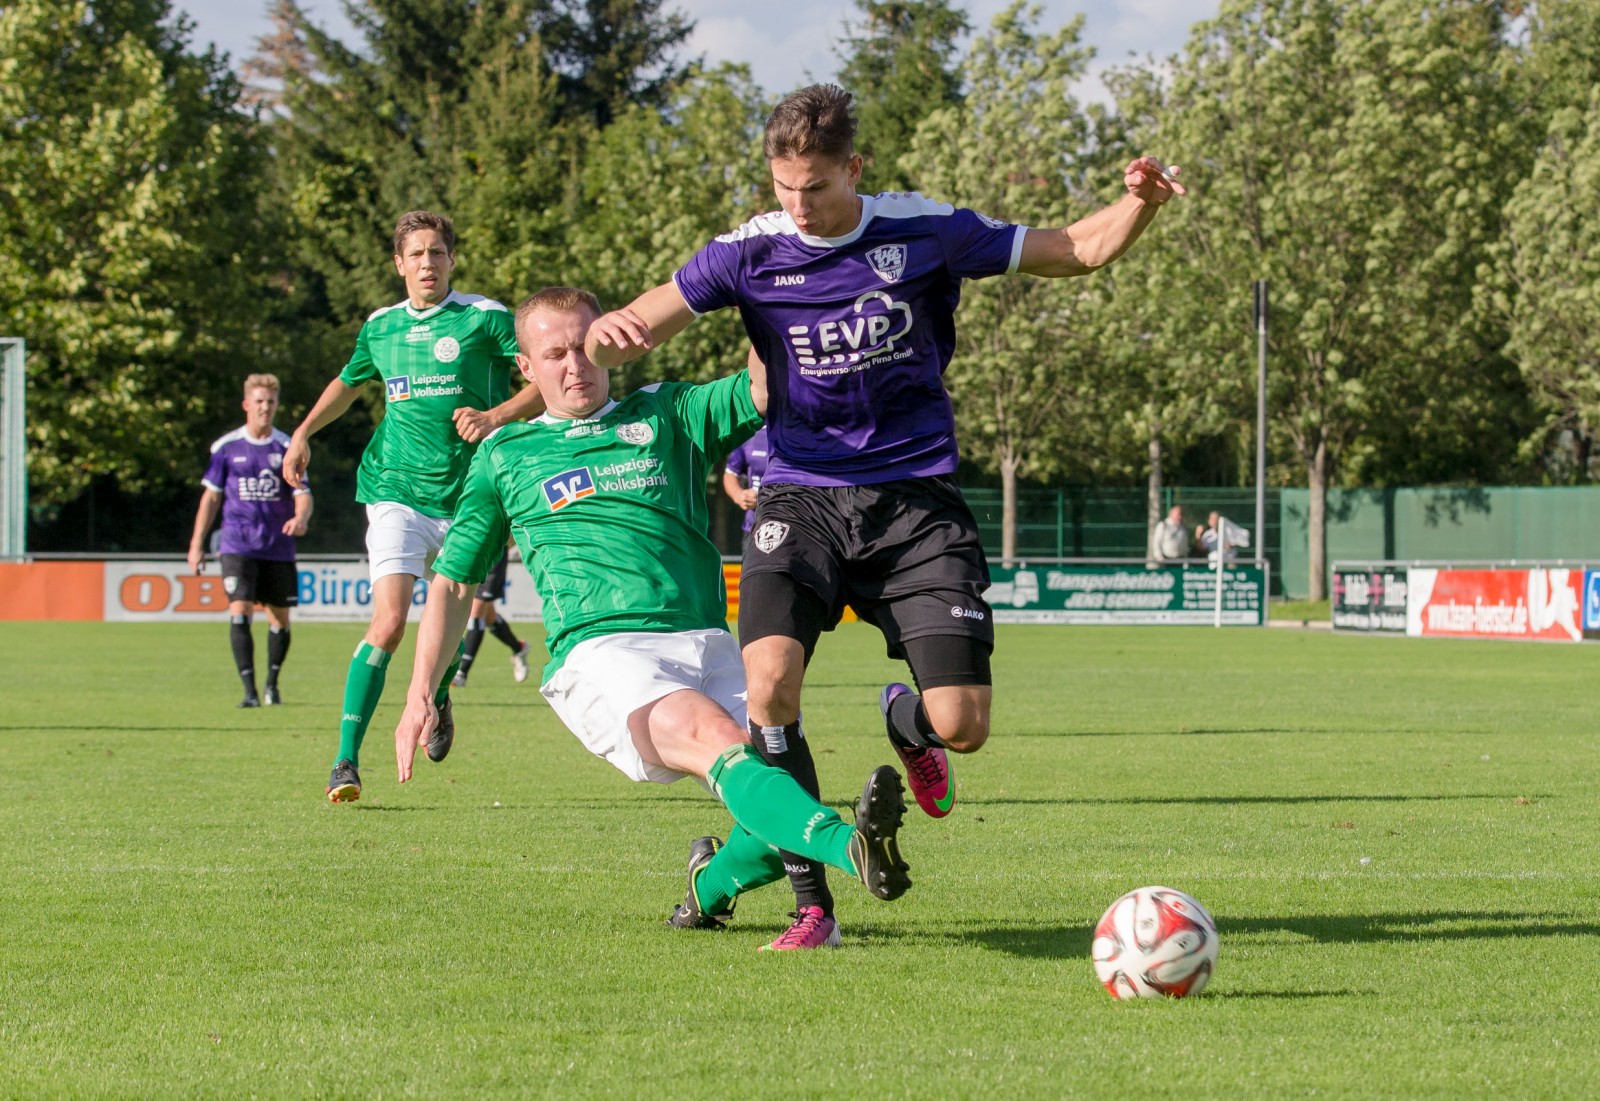 Antrittsstark: Marius Riedel vom VfL versucht, seinen Gegenspieler abzuschütteln. Foto: Marko Förster